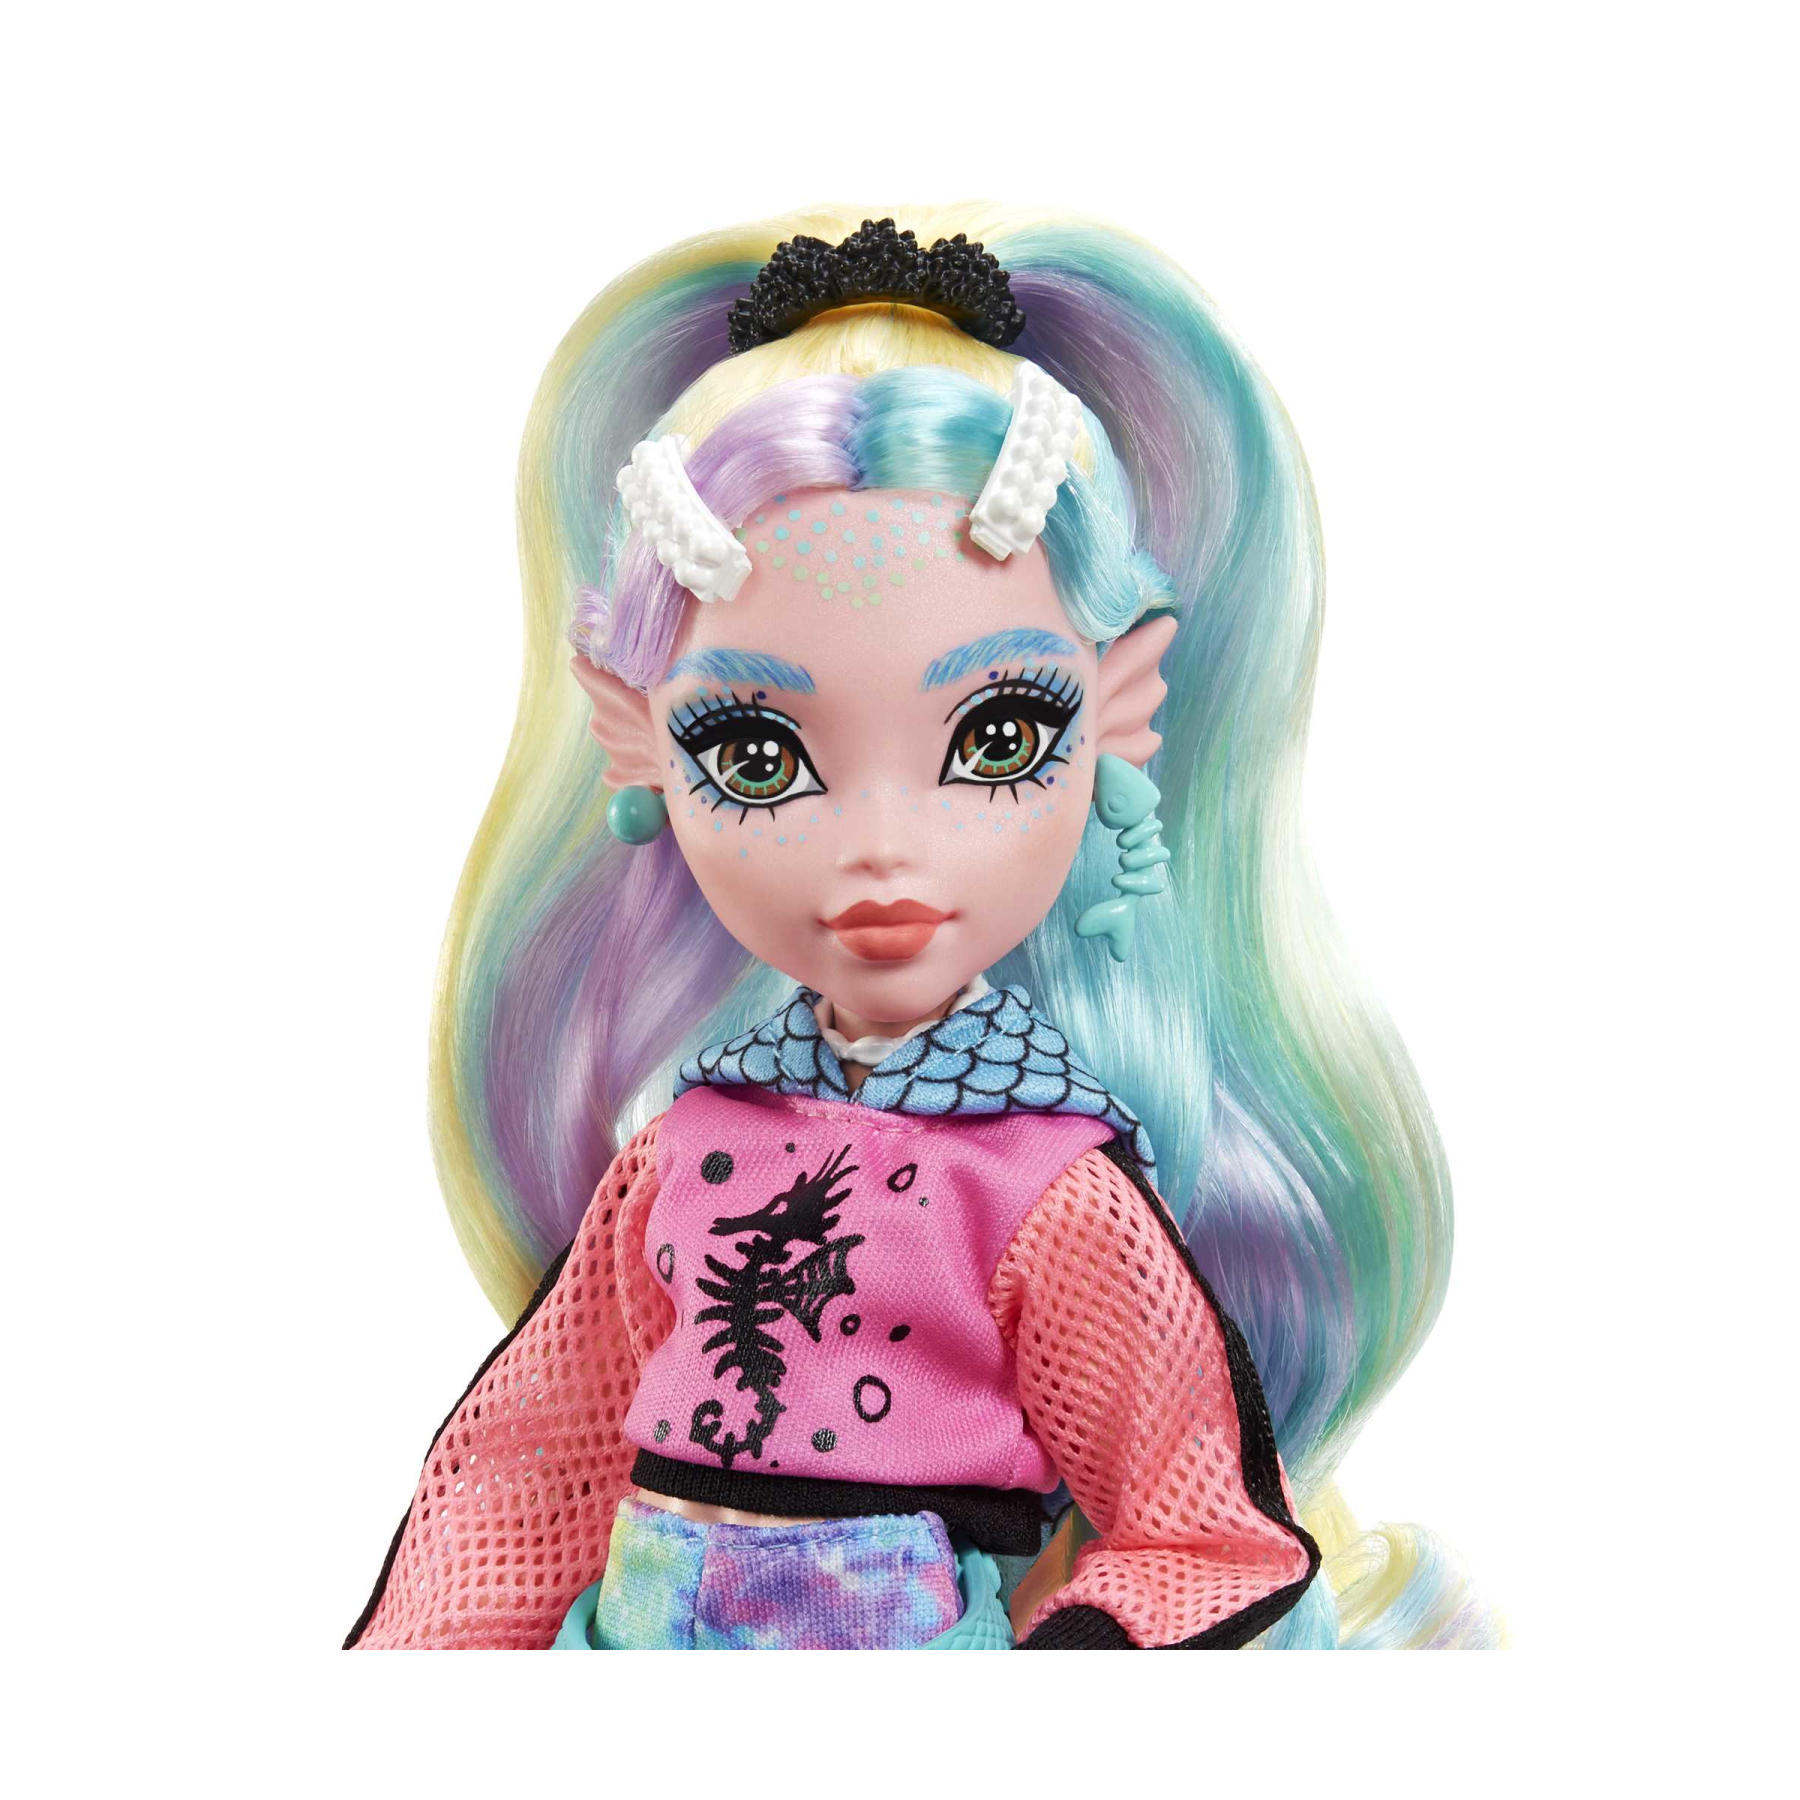 Monster high - lagoona blue, bambola snodata alla moda e capelli con ciocche colorate, con accessori e cucciolo di piranha, giocattolo per bambini, 4+ anni, hhk55 - Monster High